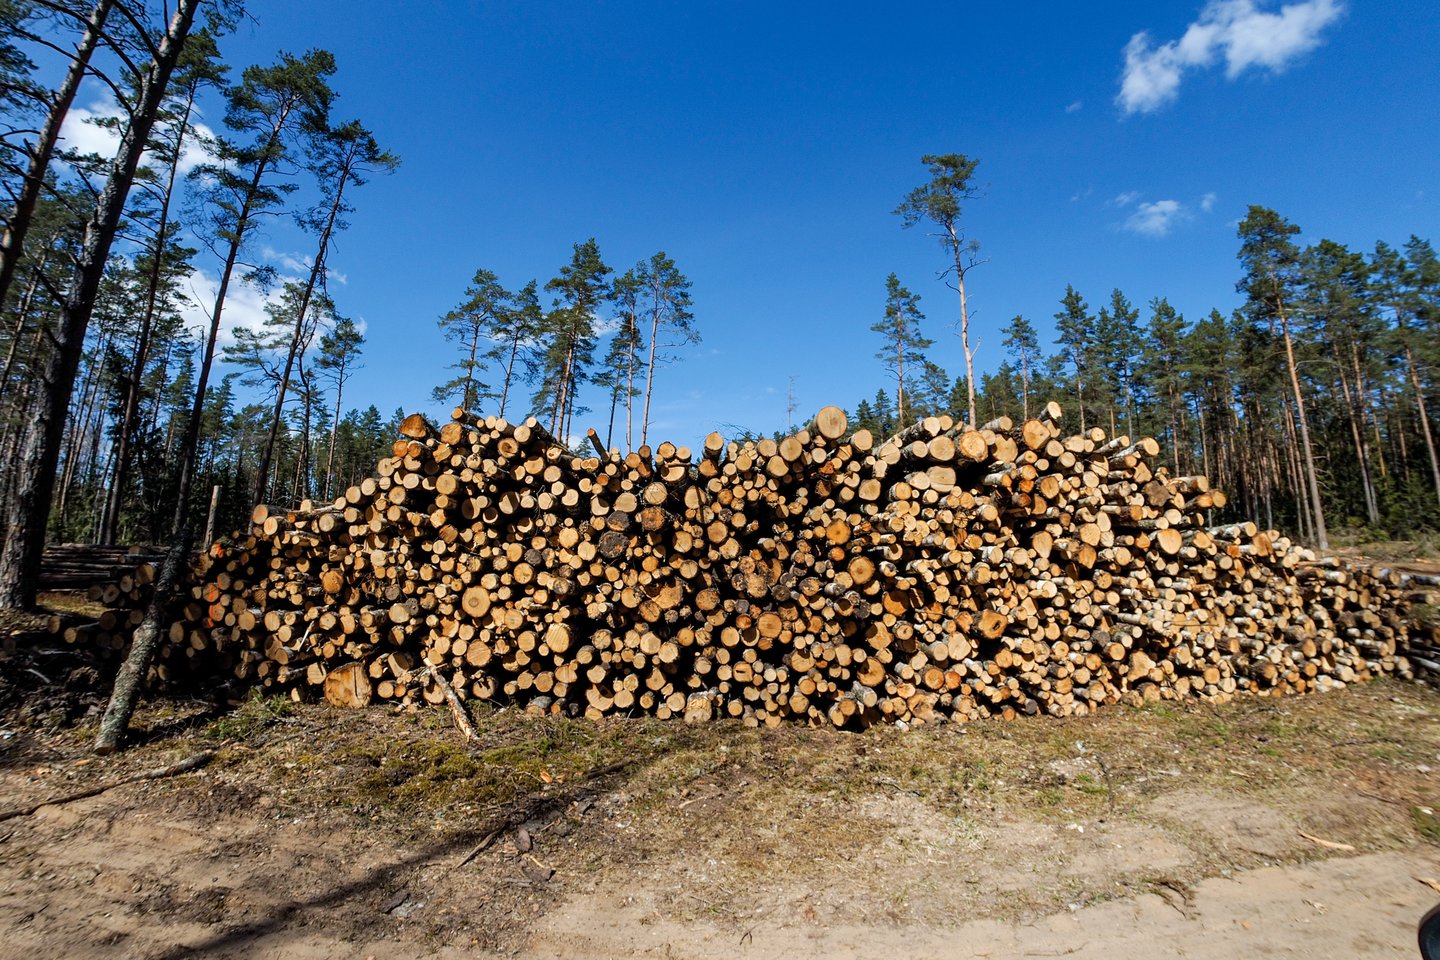 Miškininkystės ūkinės veiklos stabdymas smarkiai paliestų medienos pramonės, energetikos sektorius, padidintų nedarbą.<br>V.Ščiavinsko nuotr.